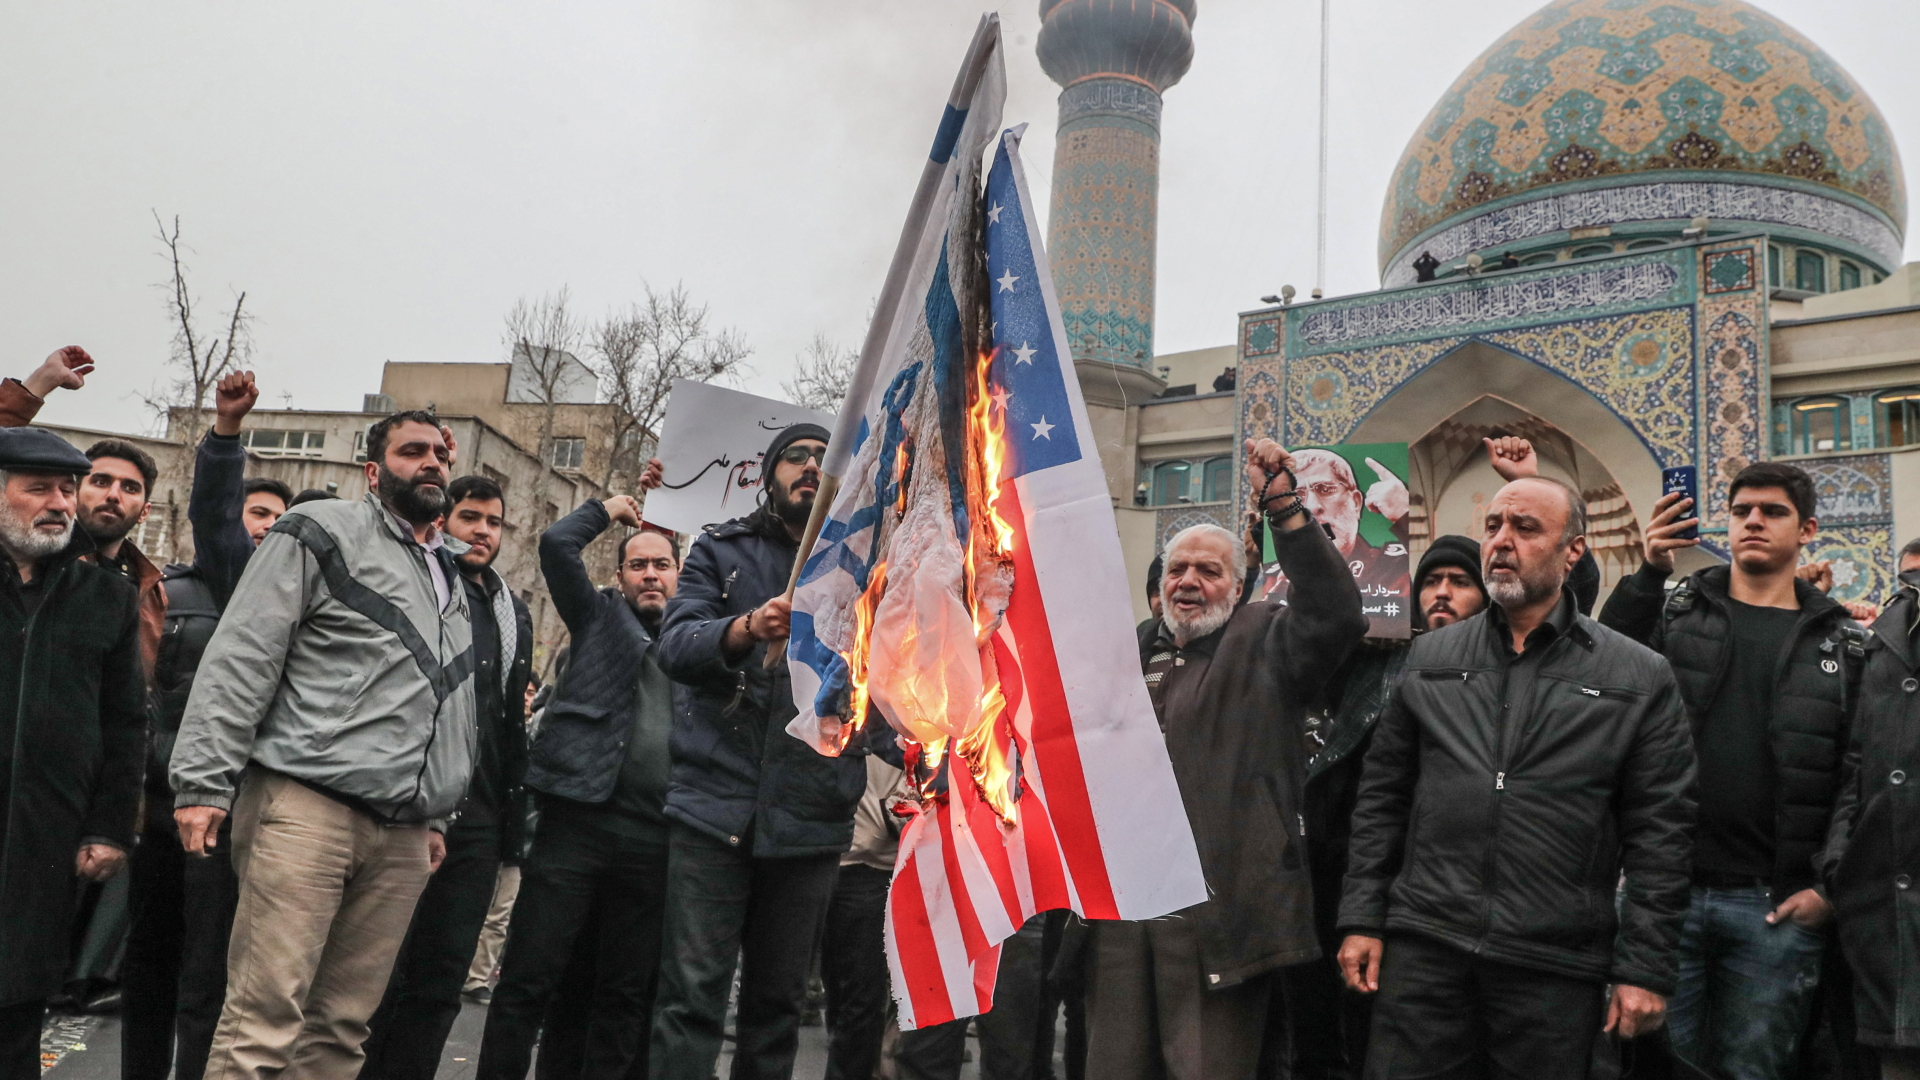 Demonstranten verbrennen US-Flagge in Teheran | dpa